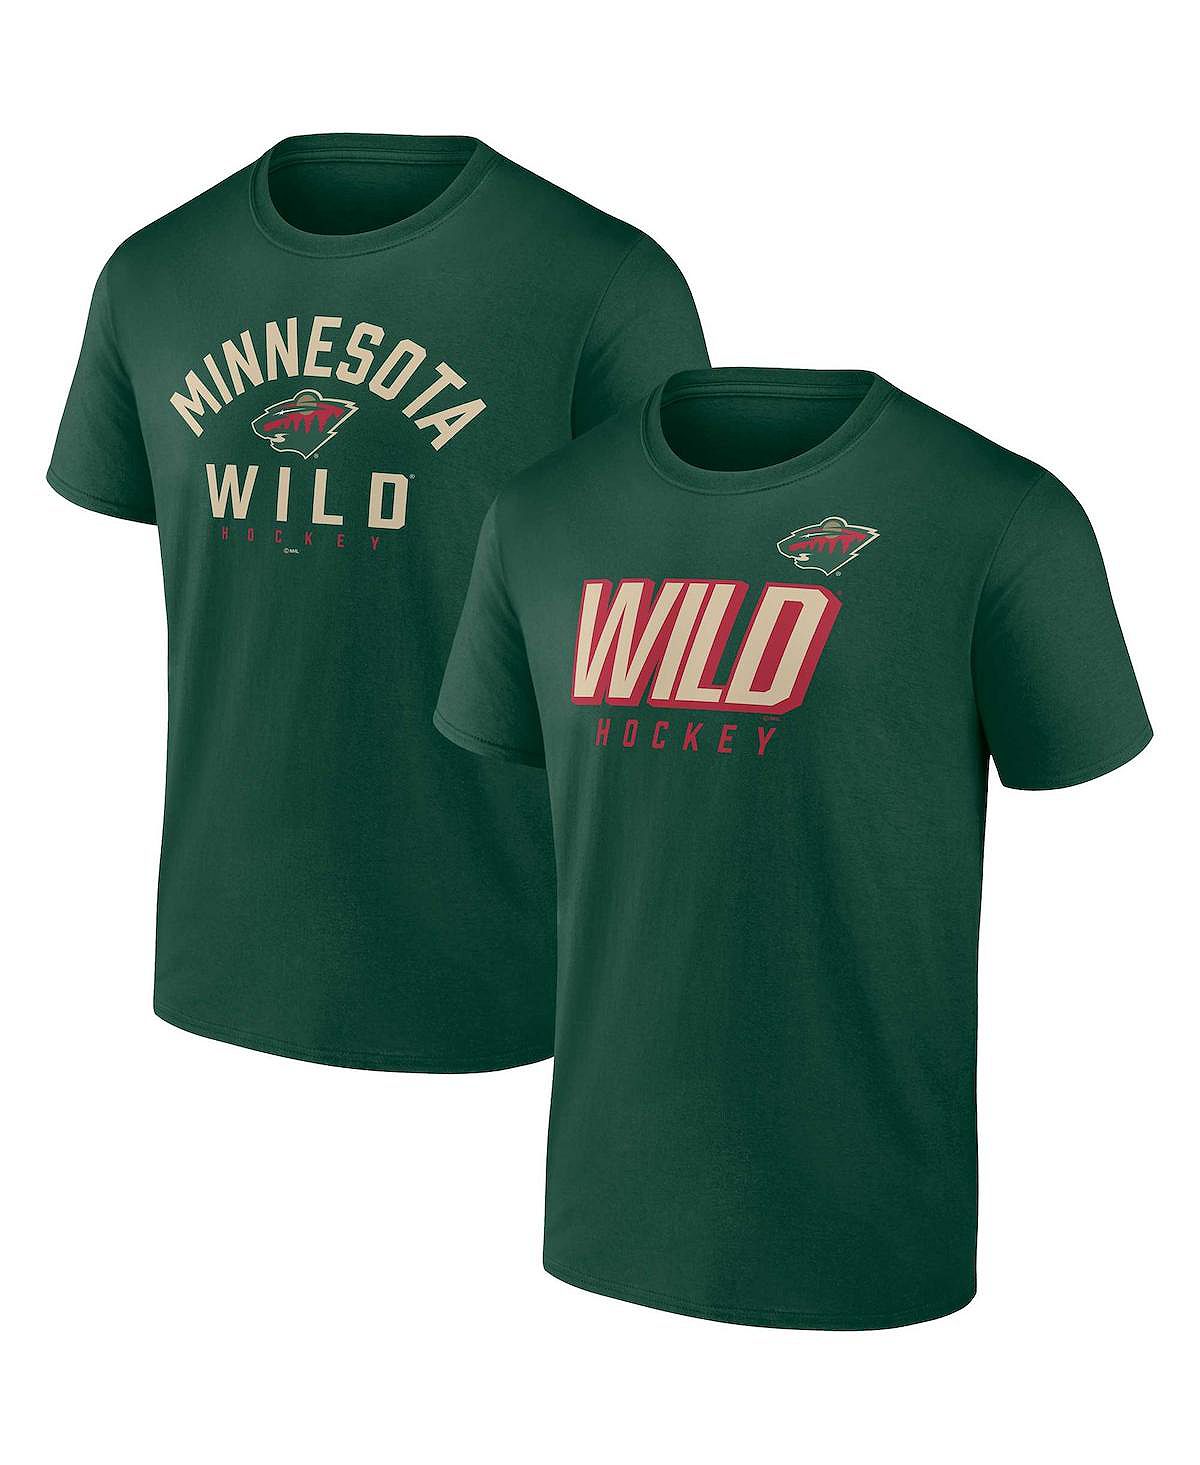 Комплект из двух мужских зеленых футболок с фирменным логотипом Minnesota Wild Wordmark Fanatics комплект из двух мужских зеленых футболок с фирменным логотипом minnesota wild wordmark fanatics